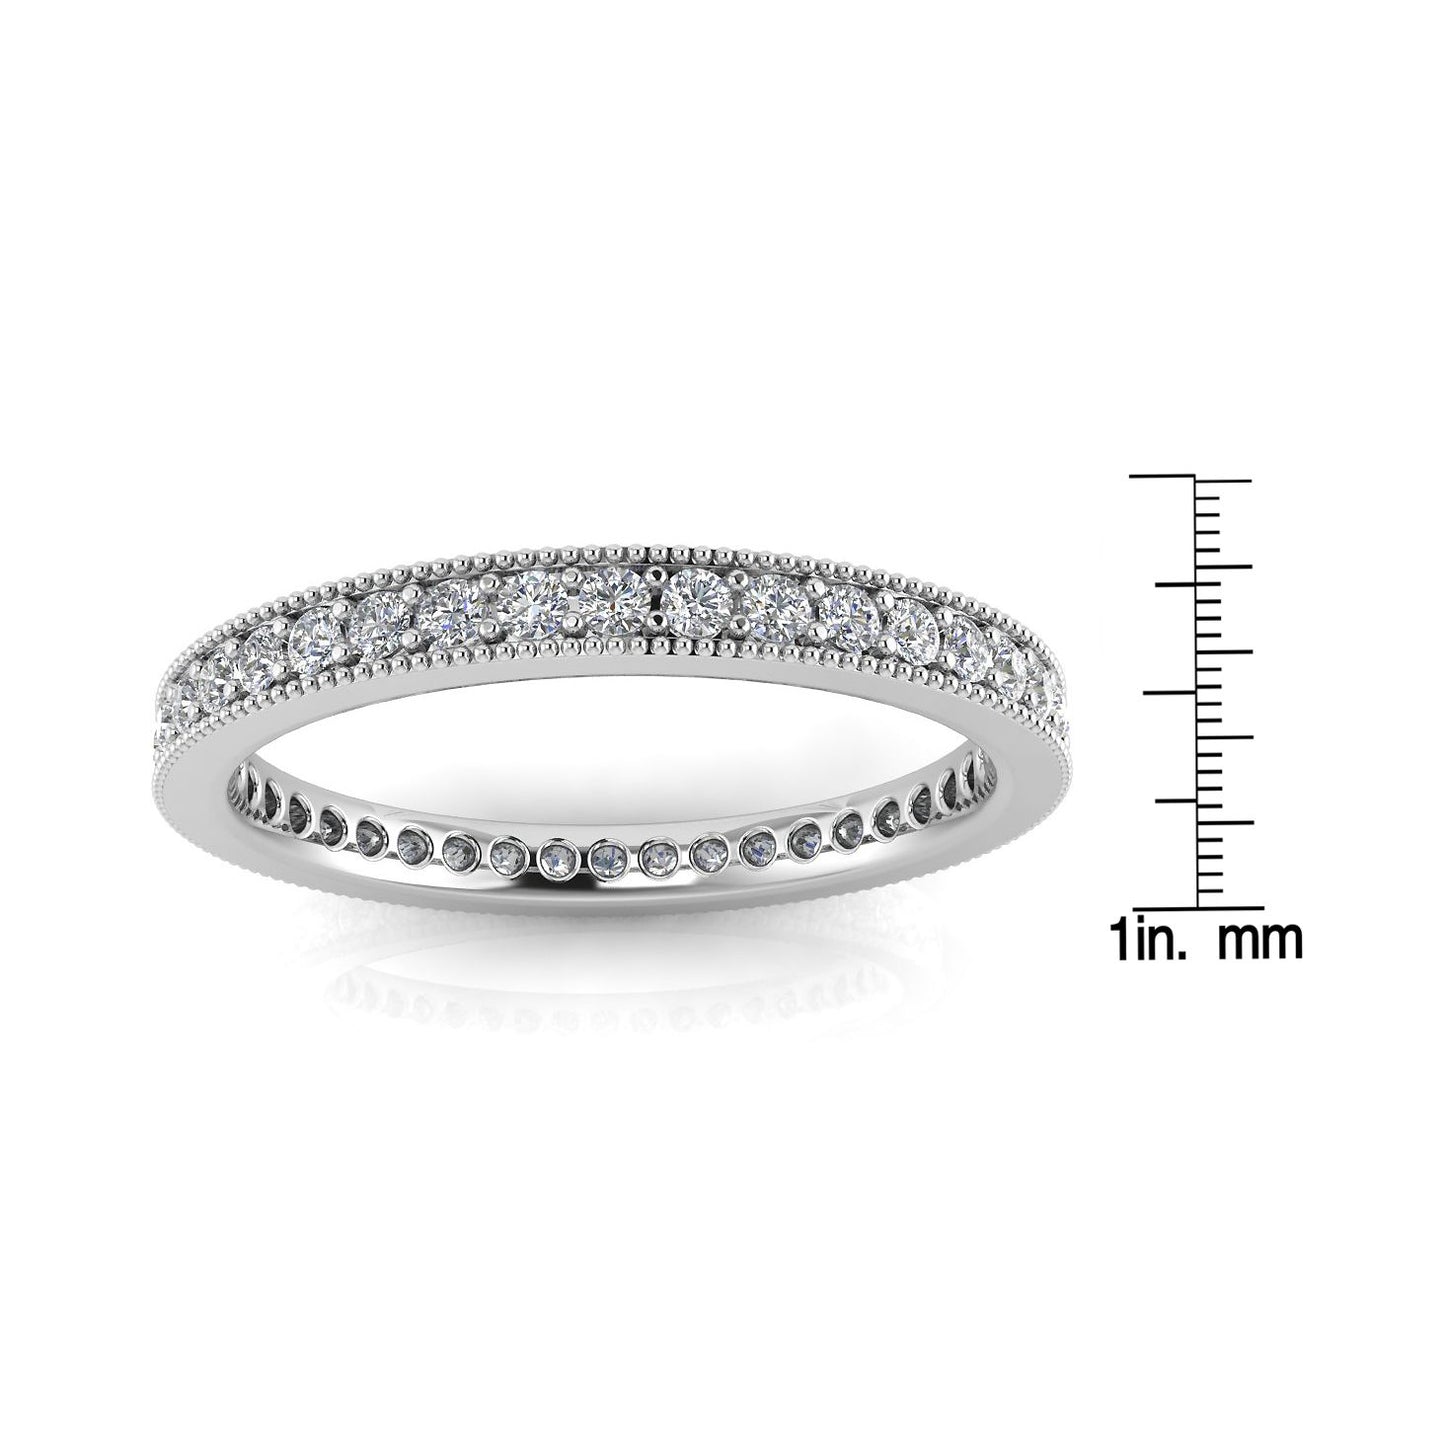 Round Brilliant Cut Diamond Pave & Milgrain Set Eternity Ring In Platinum  (0.45ct. Tw.) Ring Size 4.5